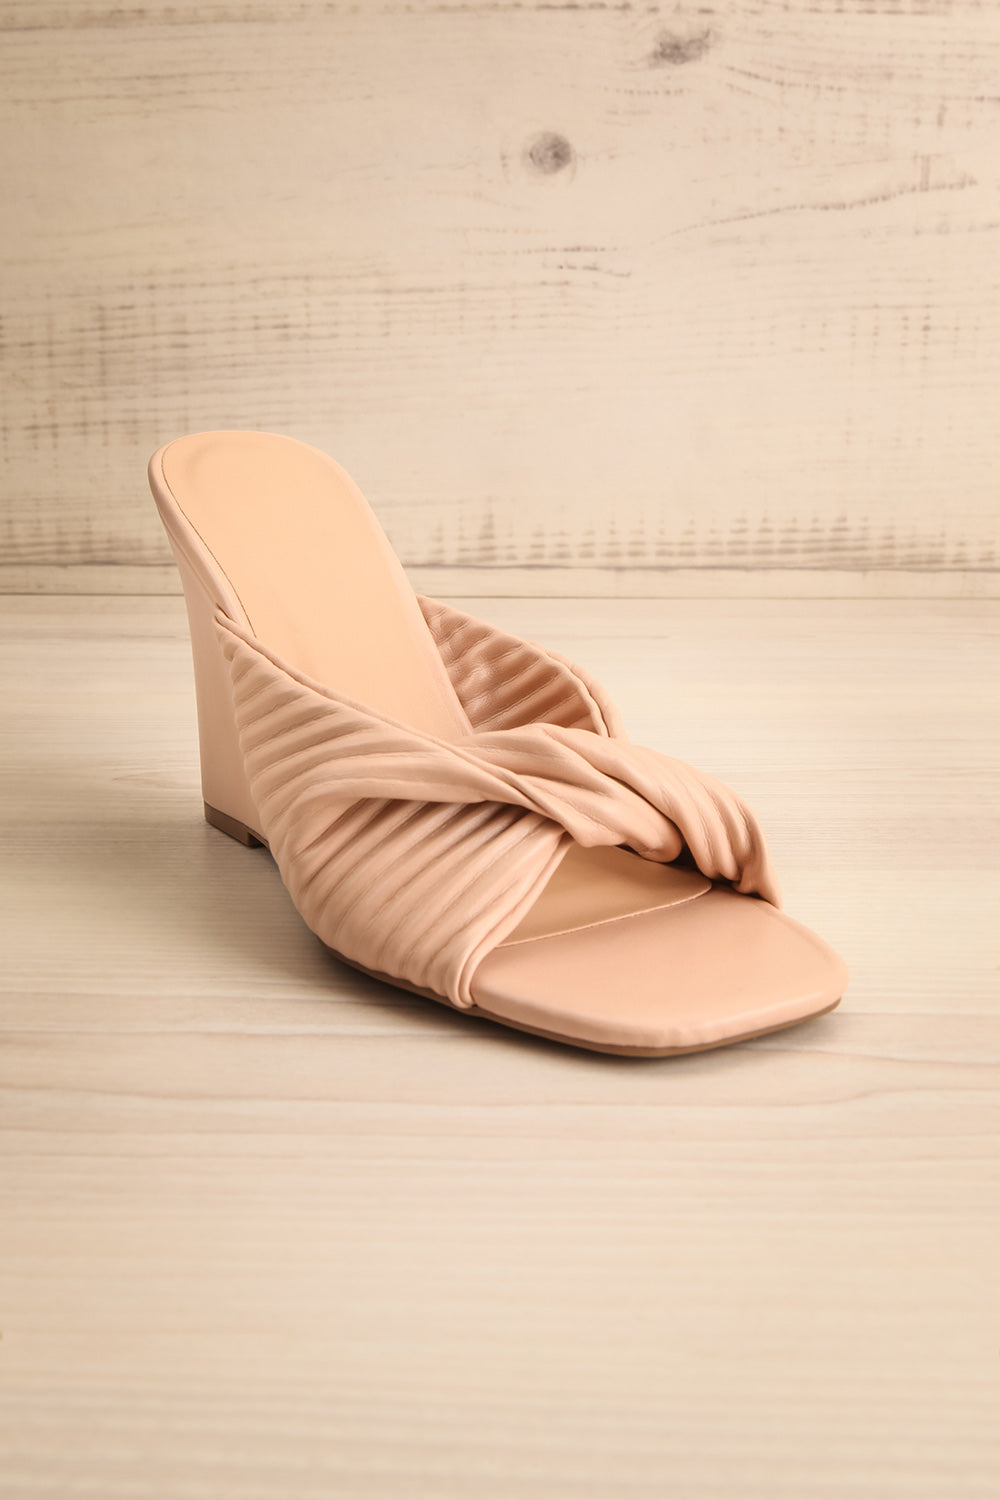 Ashai Beige Twist Front Wedge Sandals